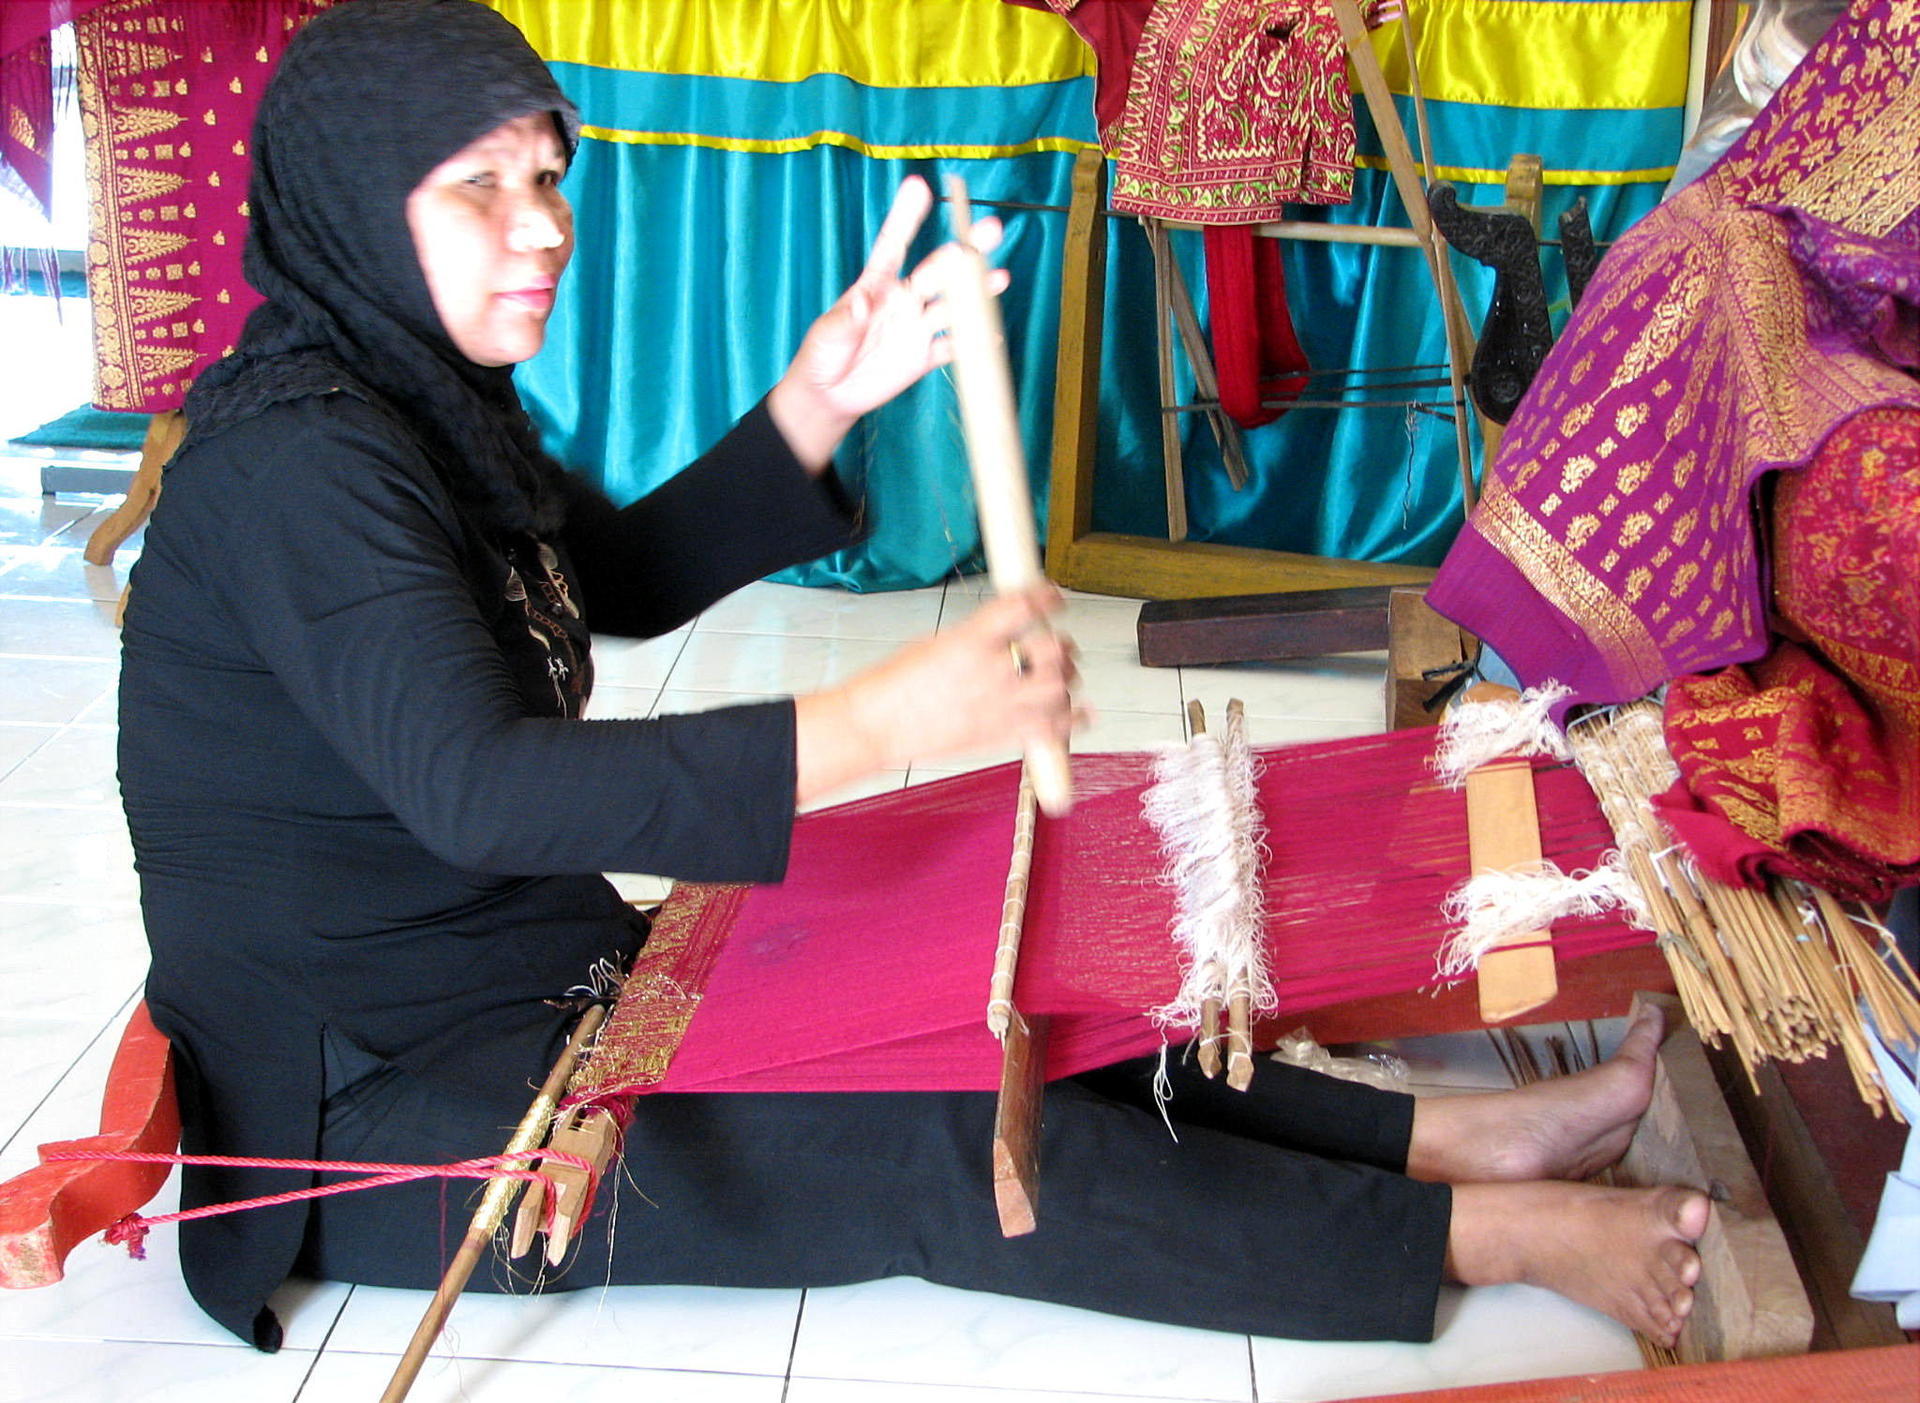 バンカブリトゥン州のチュアル(Cual)布の復活に賭ける: インドネシア